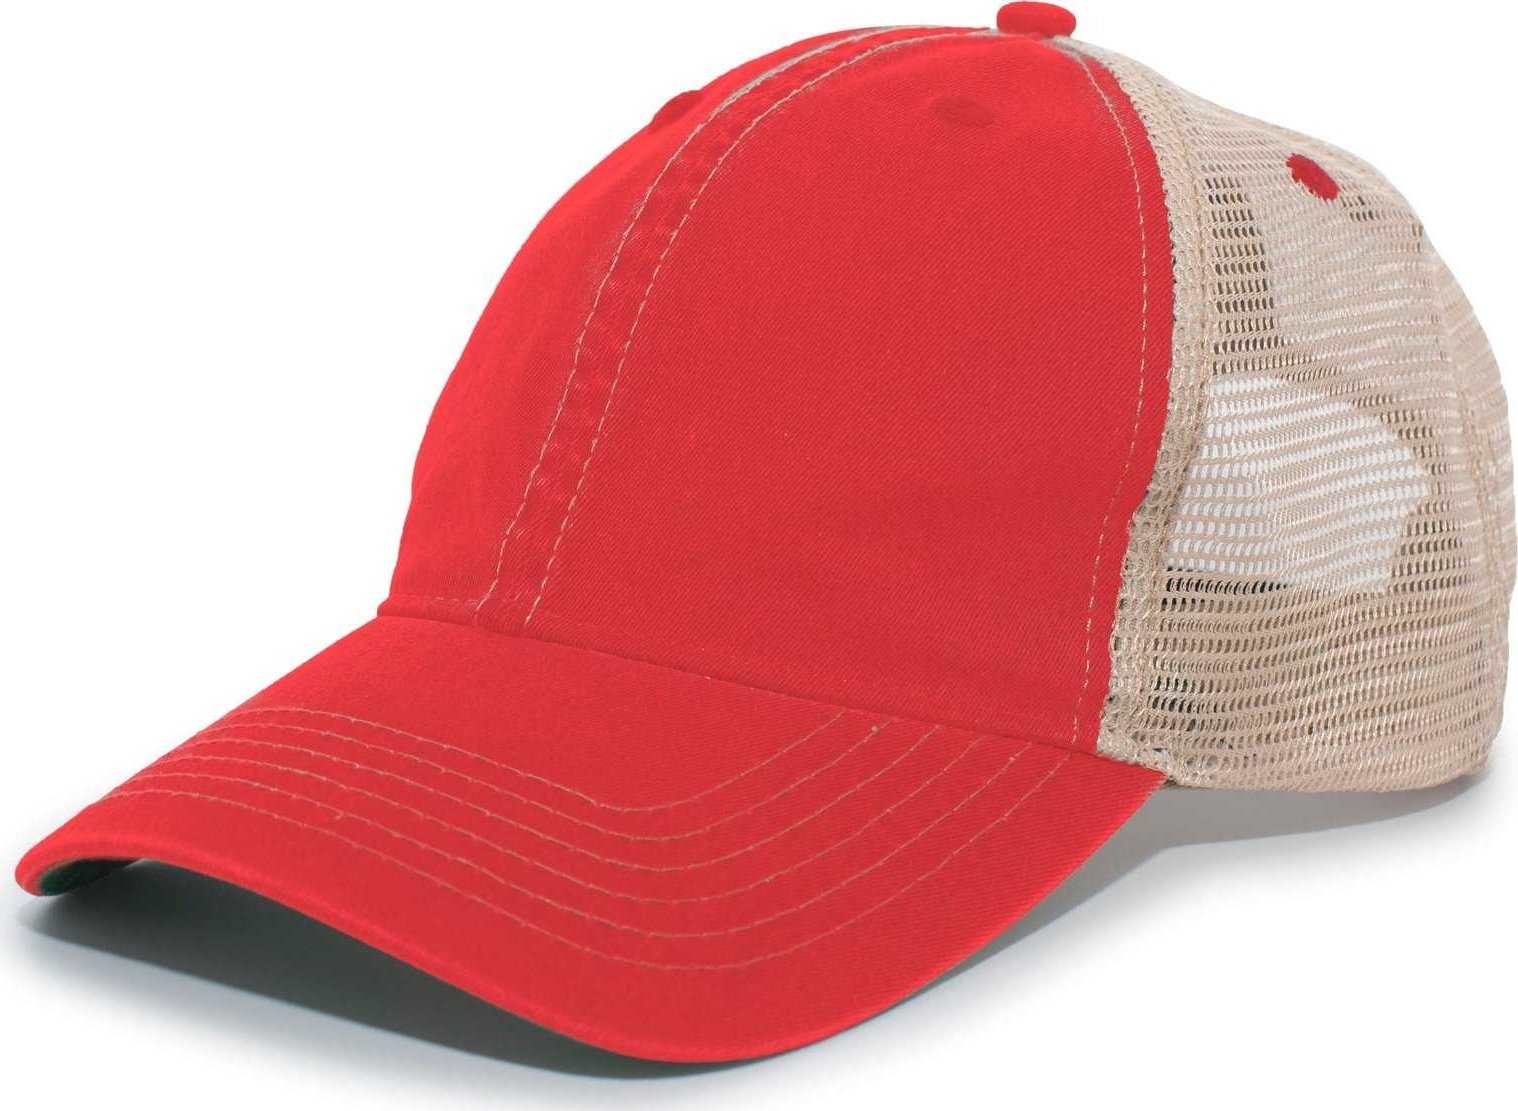 Pacific Headwear V37 Broken-In Trucker Mesh Snapback Cap - Red Tan - HIT a Double